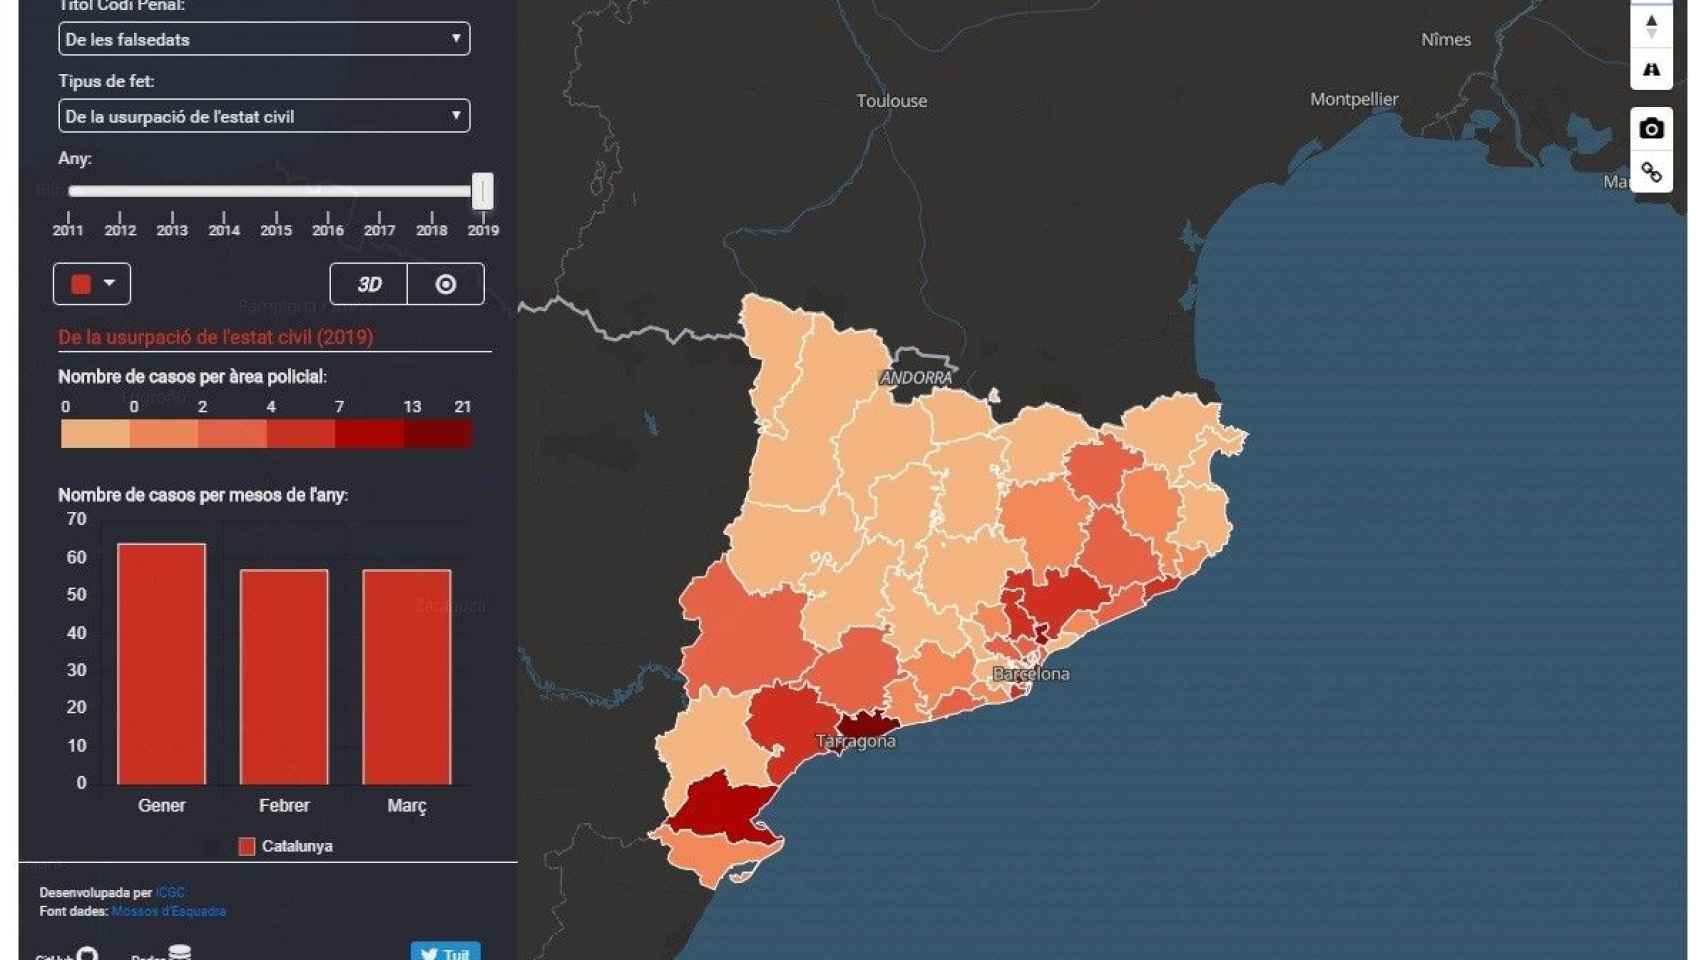 Mapa interactivo que muestra los delitos registrados en Barcelona creado por los Mossos d’Esquadra junto al Instituto Cartogràfic y Geològic de Catalunya